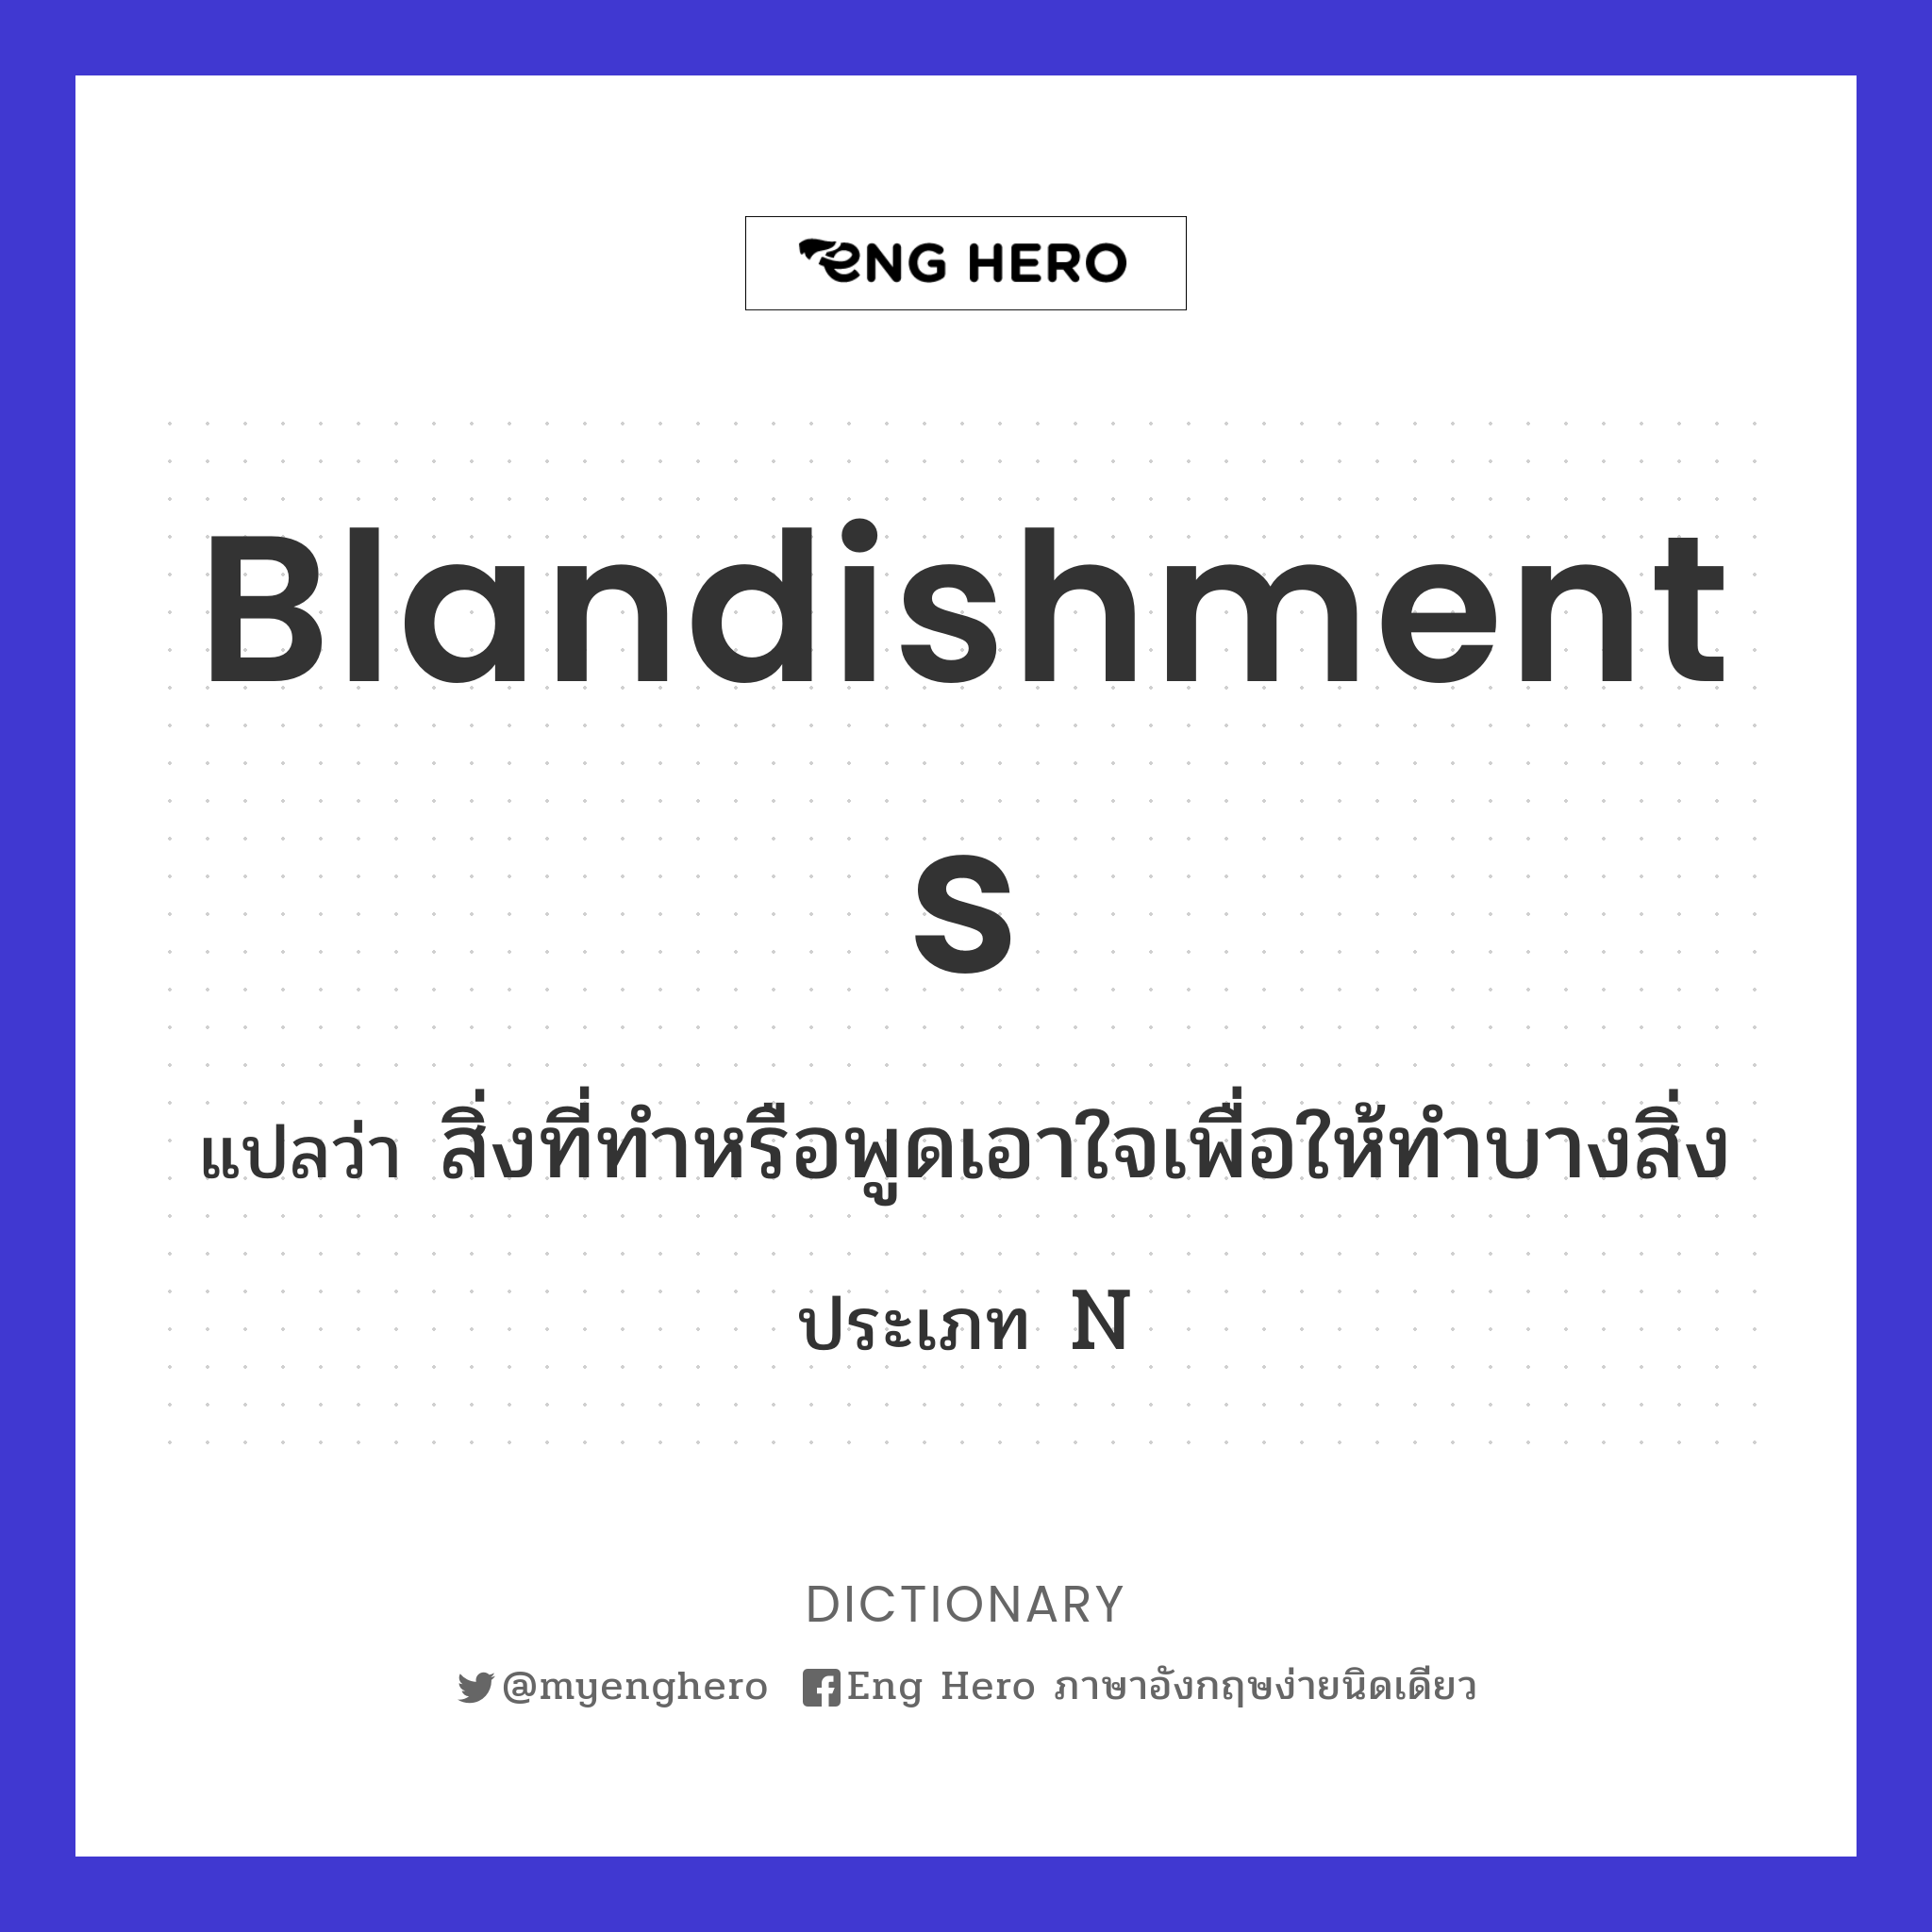 blandishments